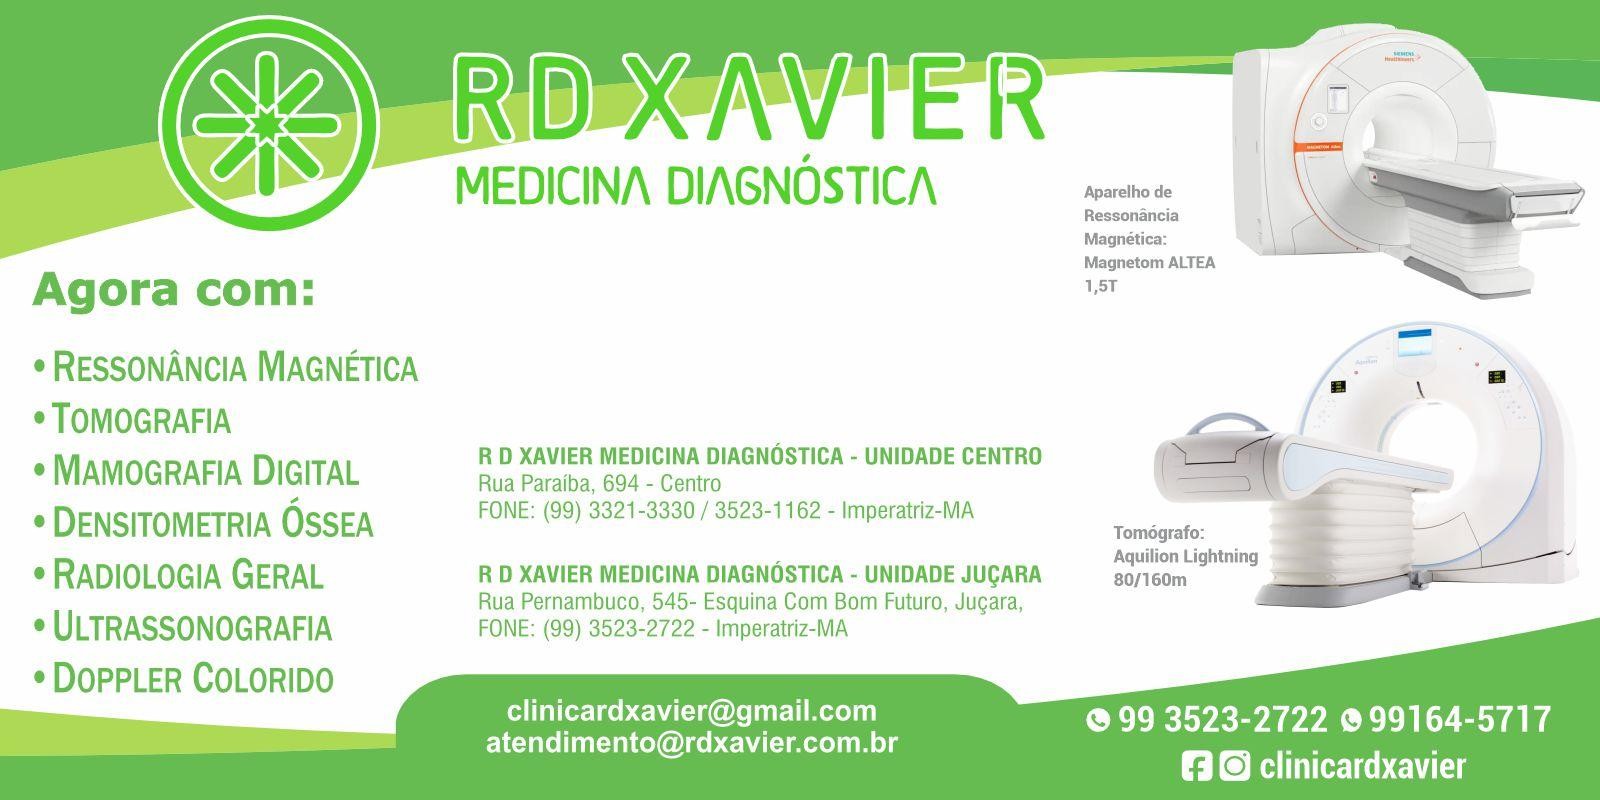 RD XAVIER - Medicina Diagnóstica 